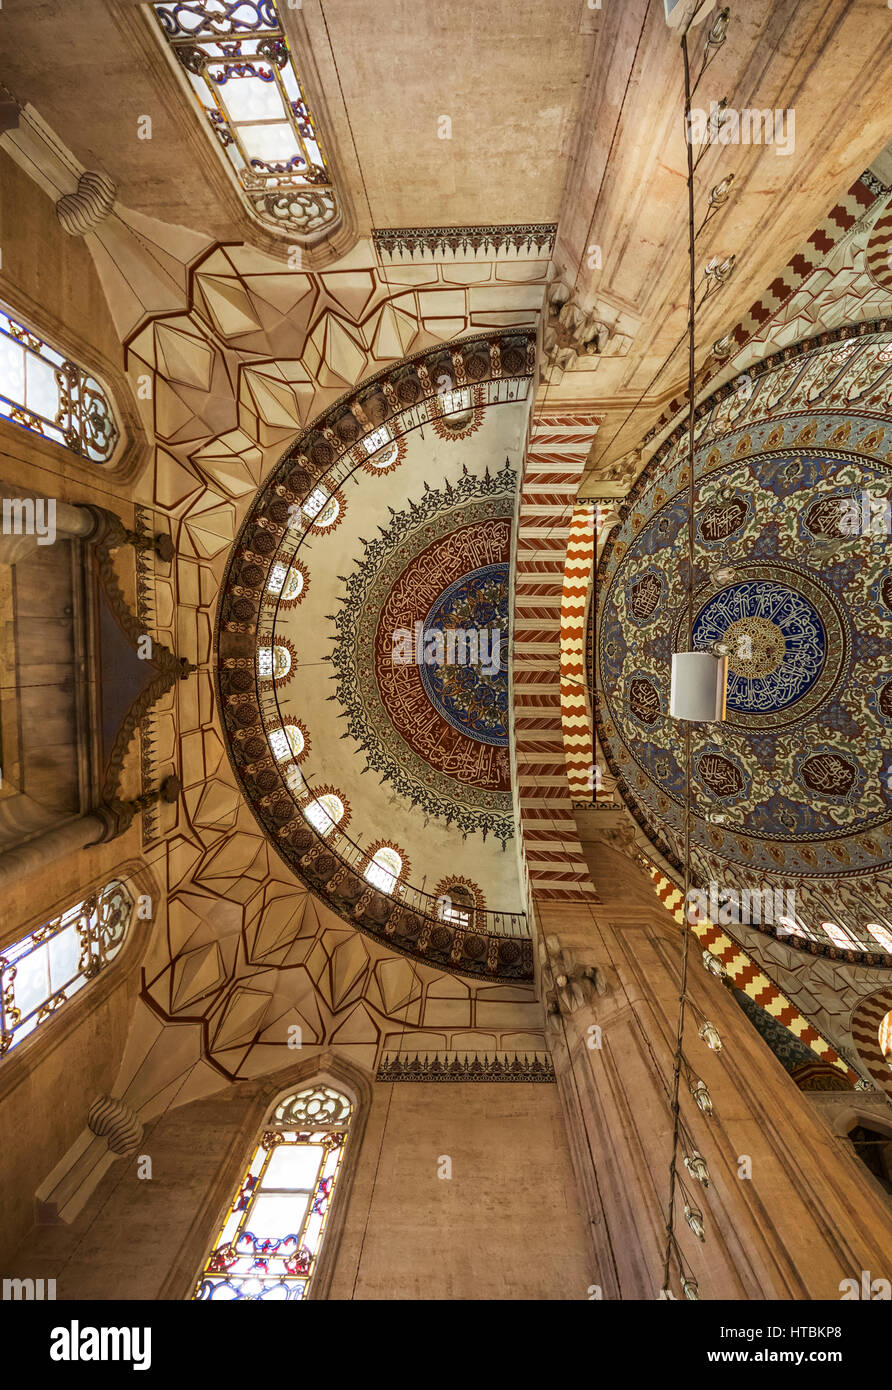 Innenansicht der zentralen Kuppel und es unterstützt Struktur von Zwickeln, Bögen und semi-Kuppeln über dem Mihrab der Selimiye Moschee Stockfoto